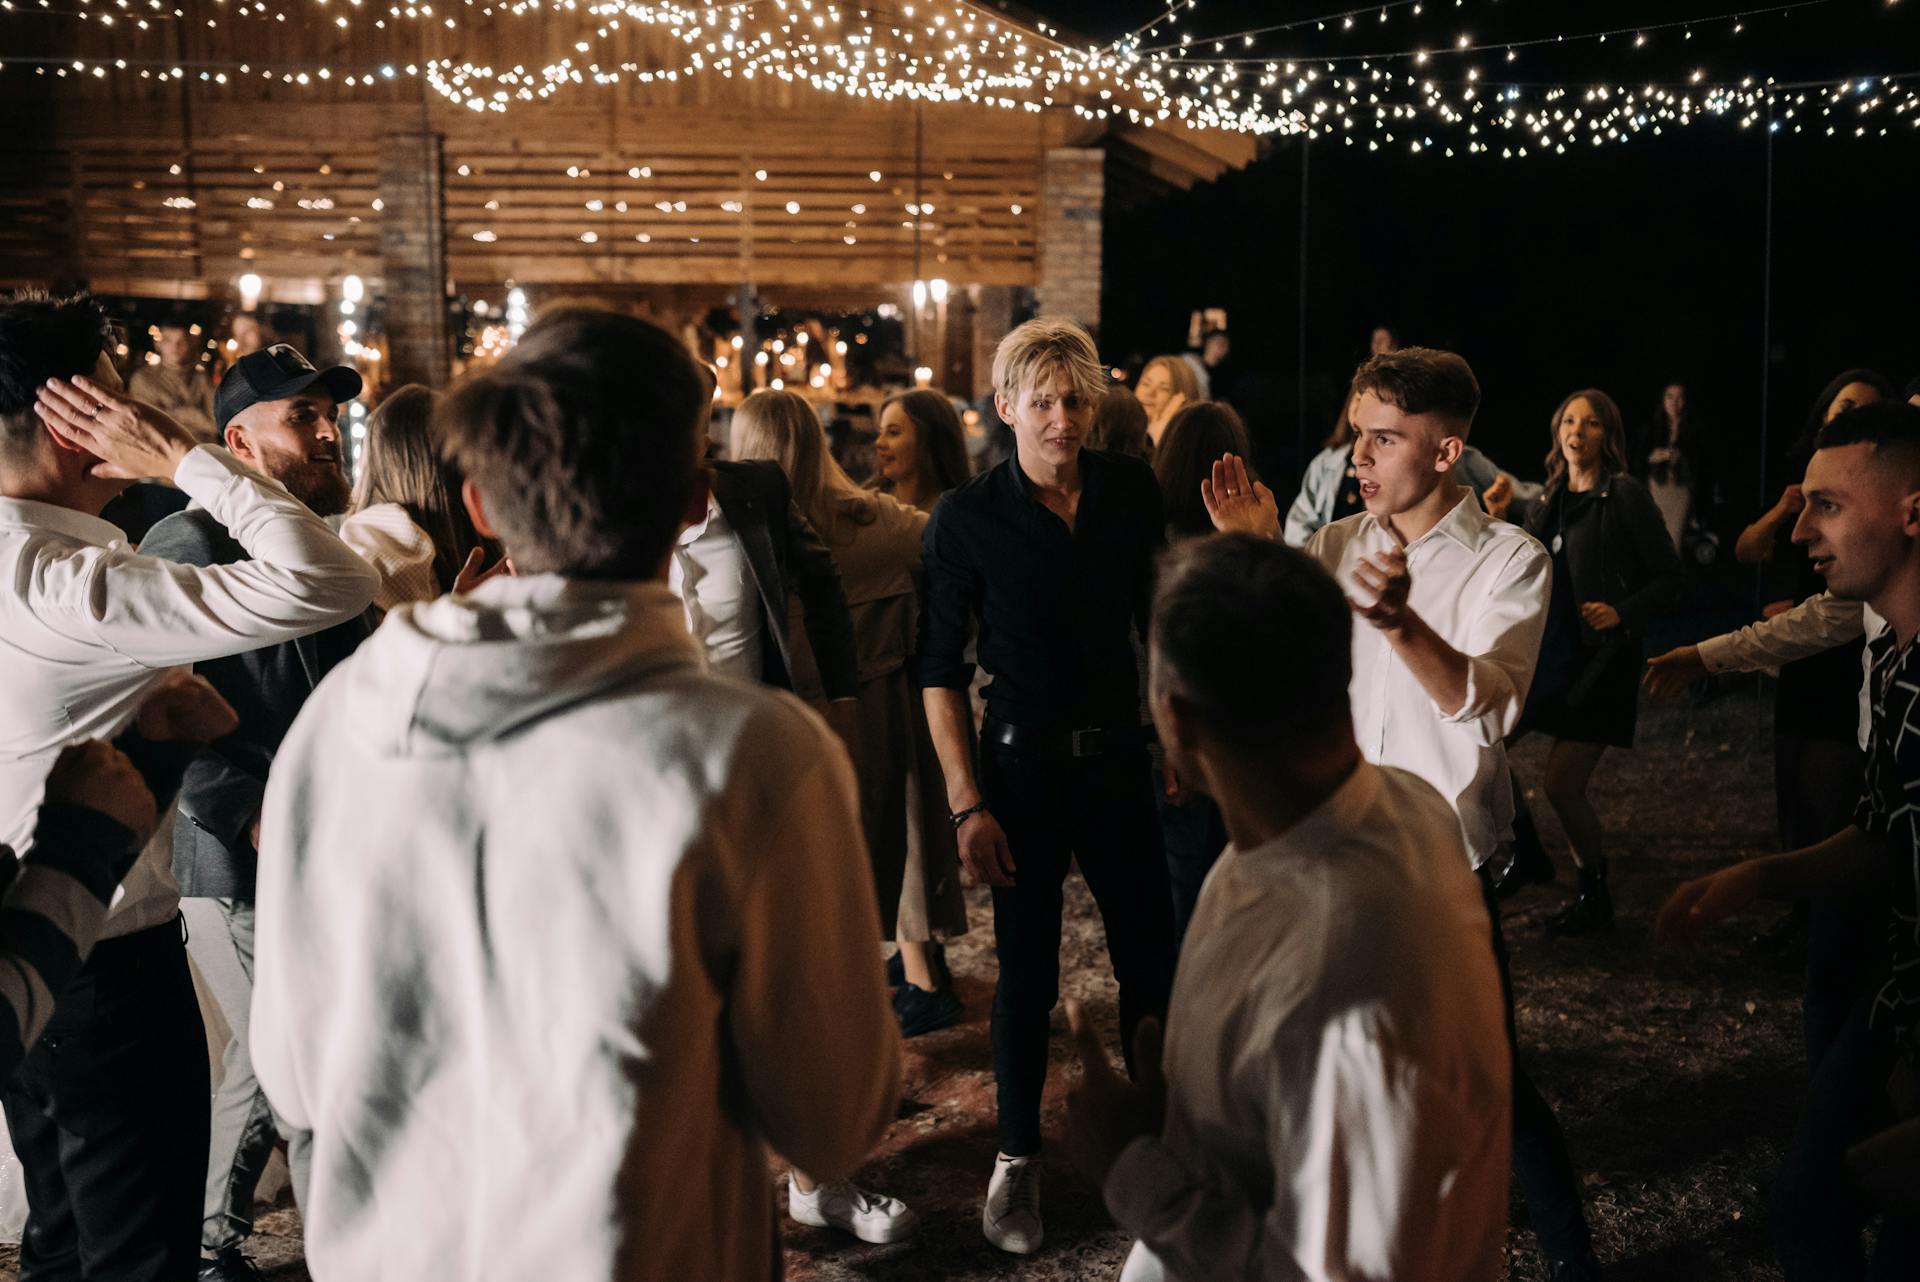 Guests dancing at a wedding reception | Source: Pexels